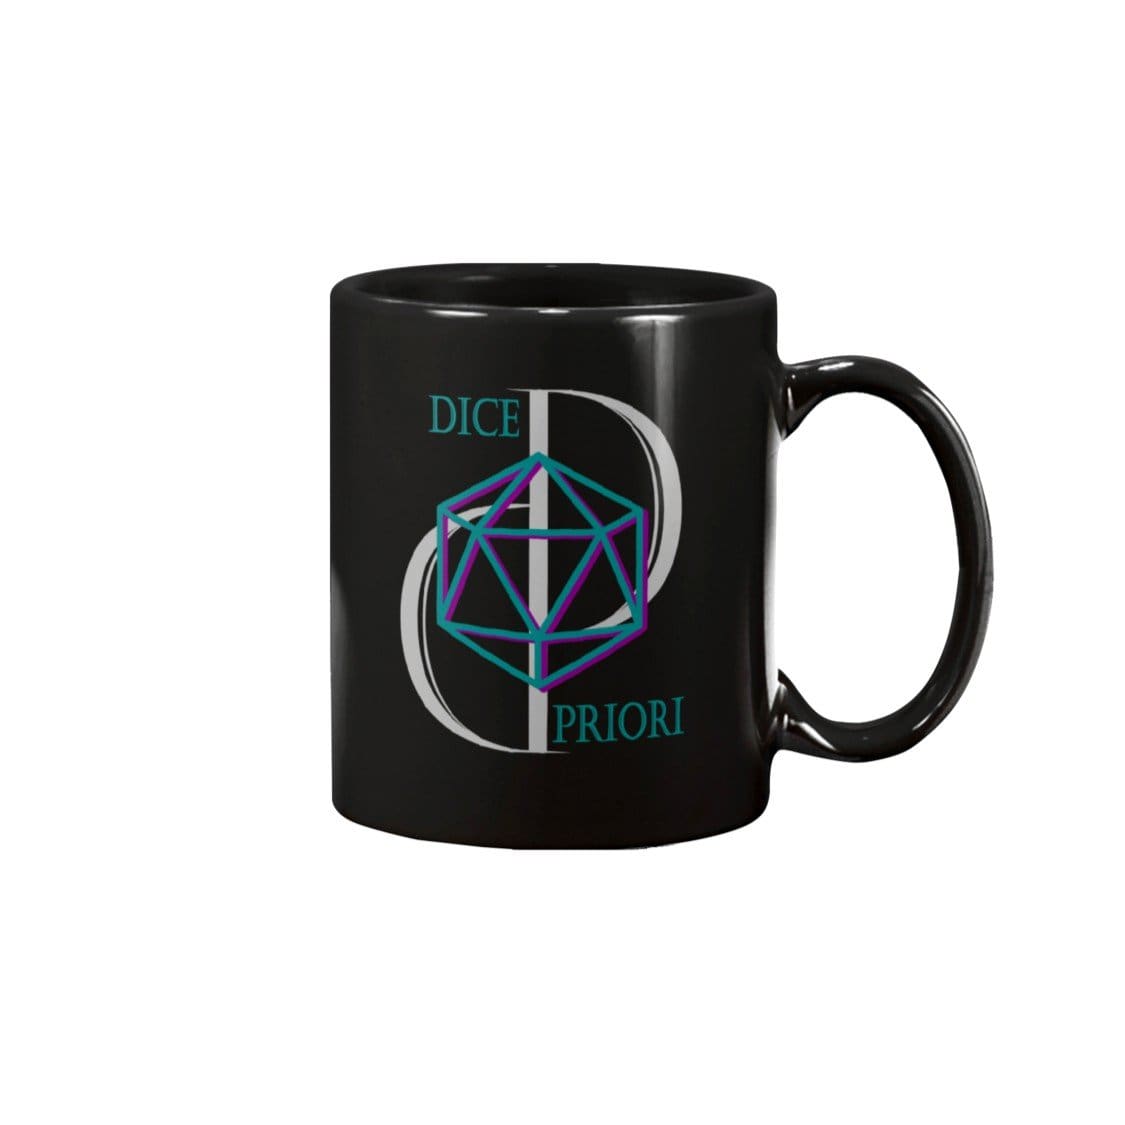 Dice Priori D20 Focus Text Logo 11oz Coffee Mug - Black / 11OZ - Dice Priori